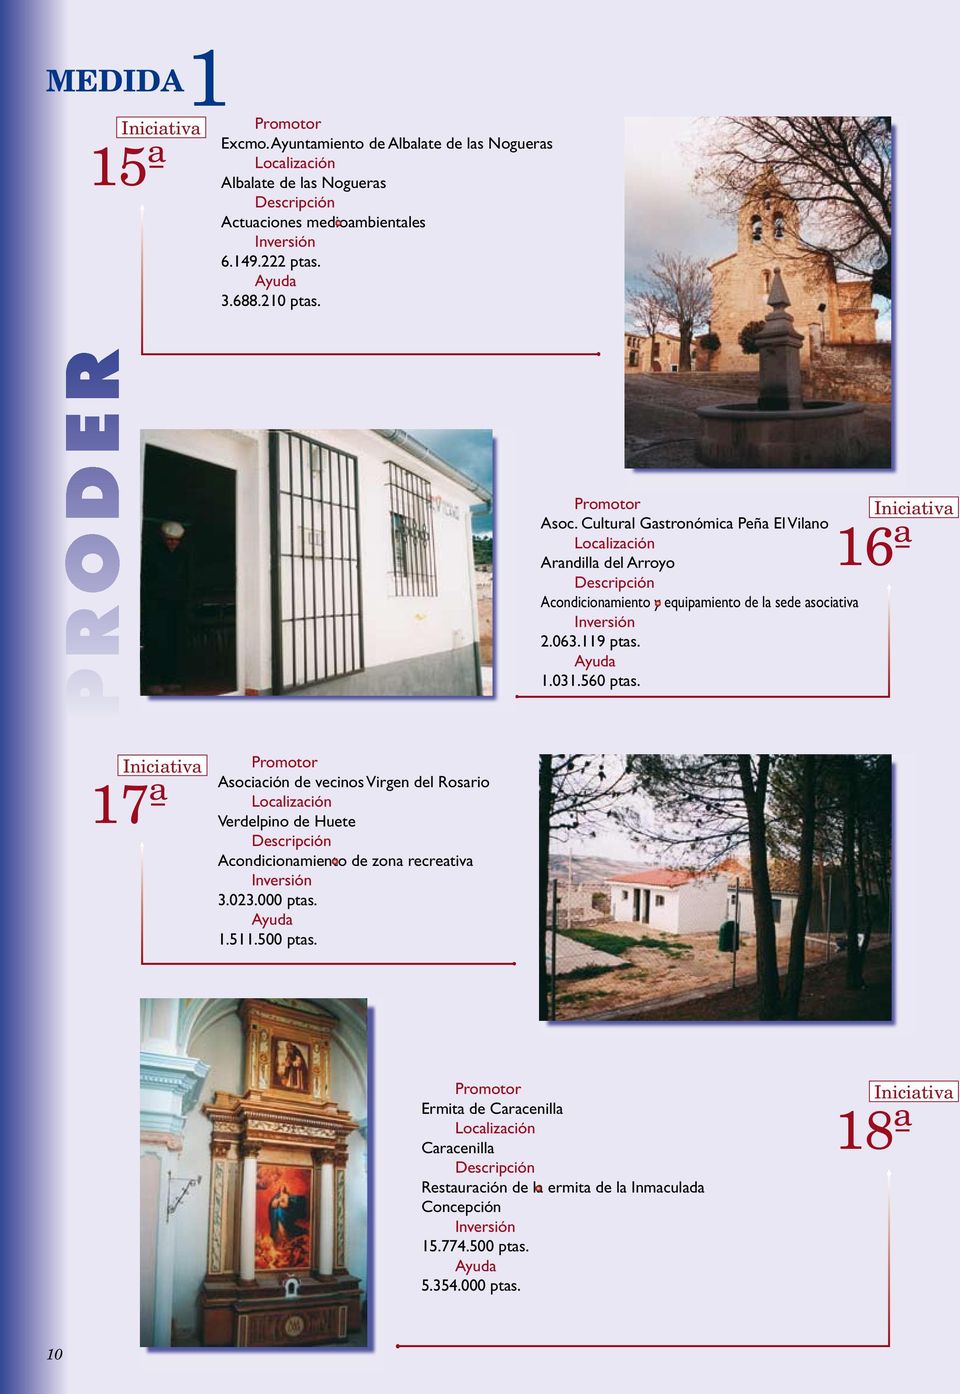 119 ptas. 1.031.560 ptas. 17ª Asociación de vecinos Virgen del Rosario Verdelpino de Huete Acondicionamiento de zona recreativa 3.023.